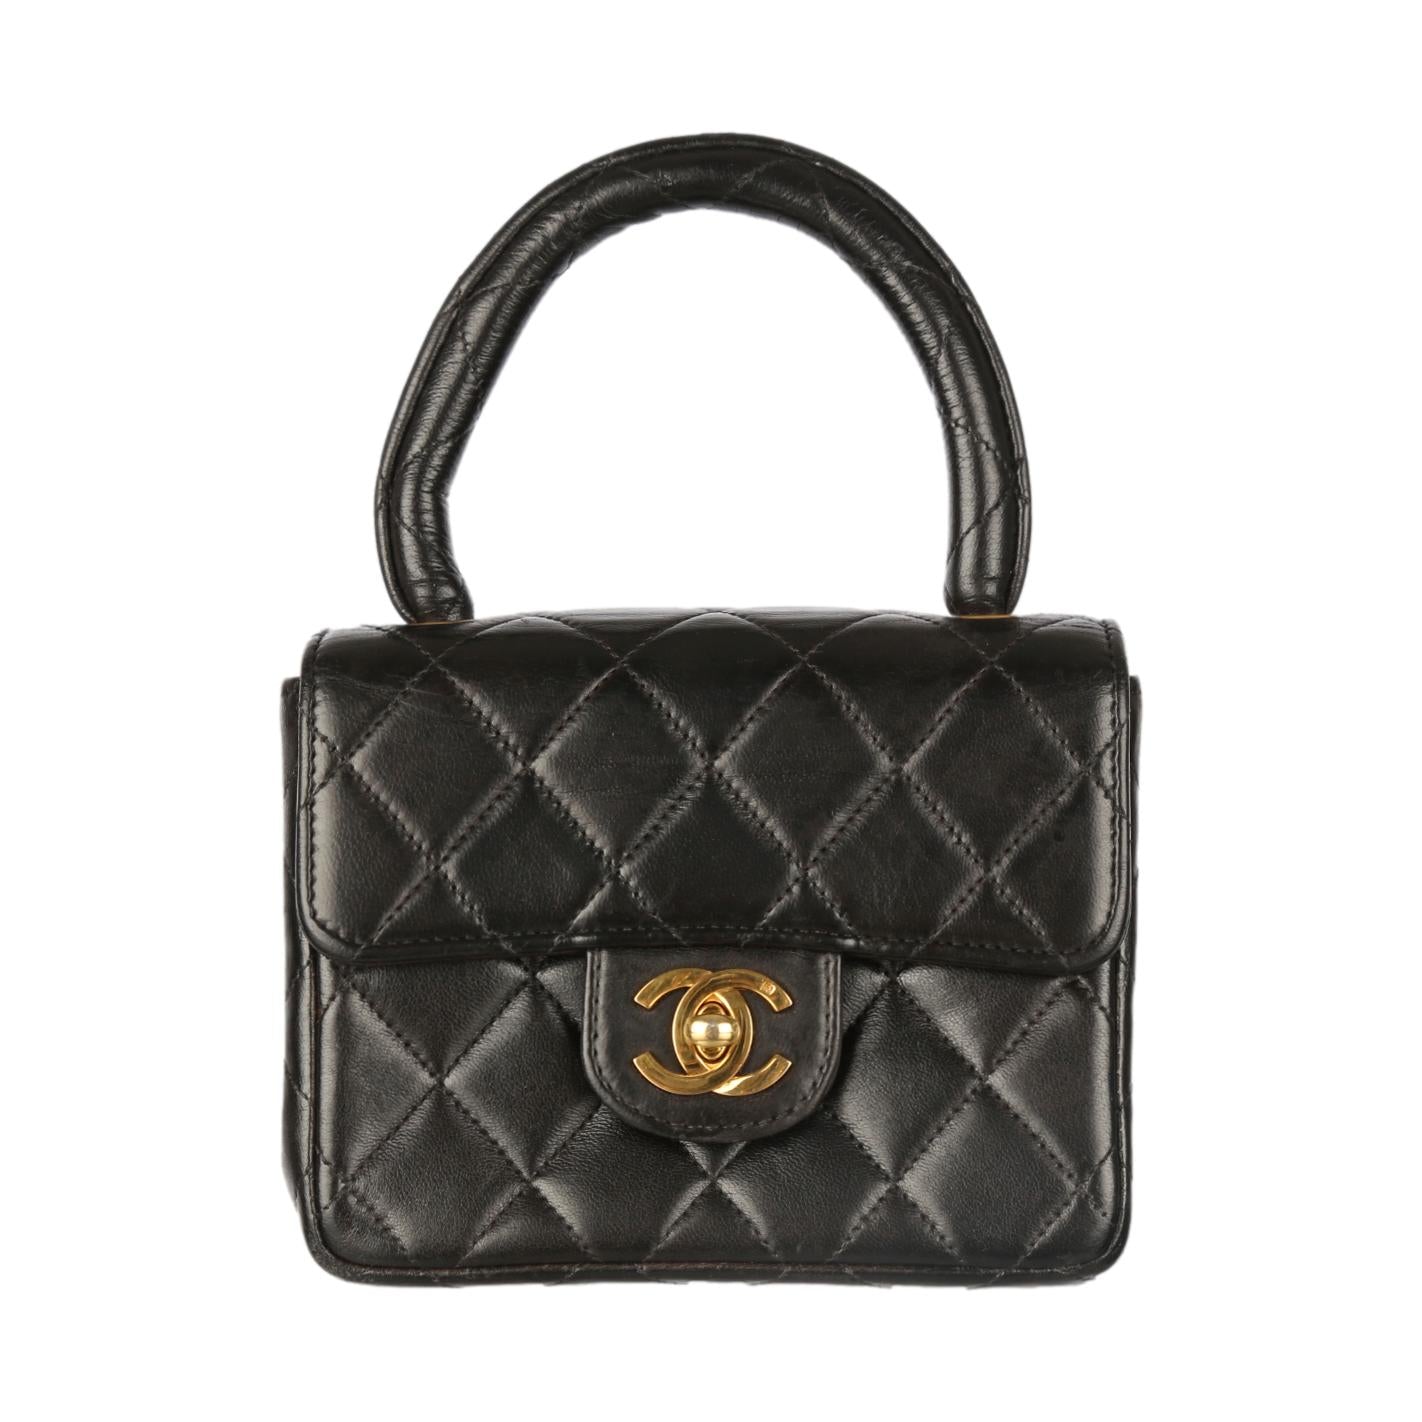 Shop the Exquisite Chanel Black Mini Top Handle Bag